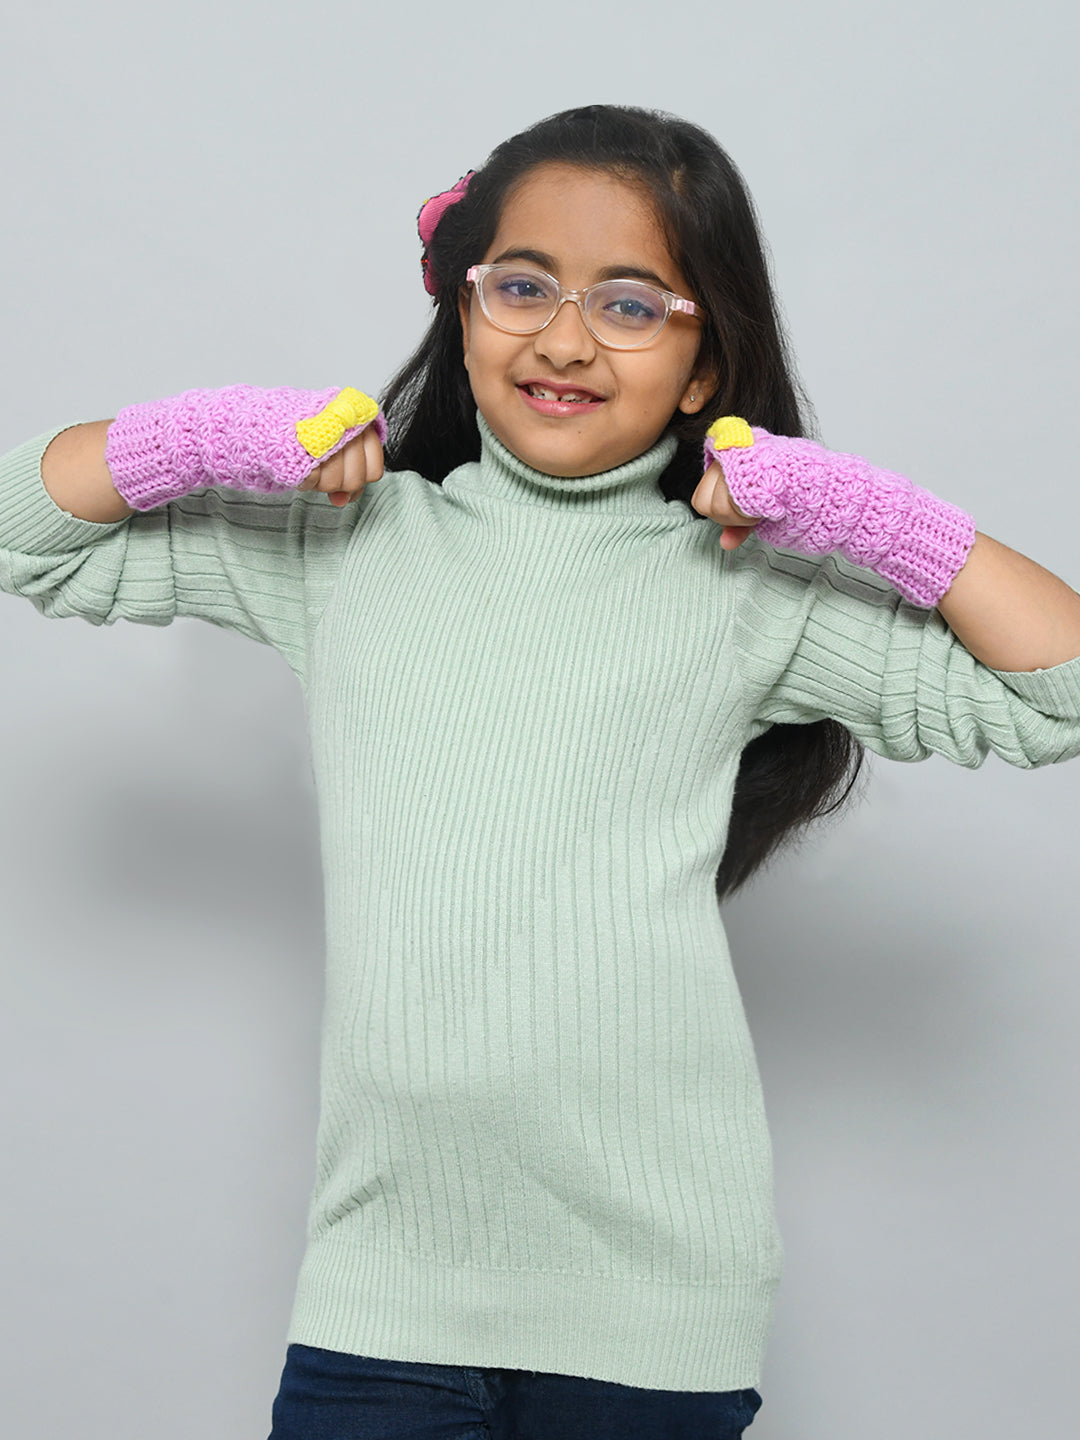 Blue Handmade Woollen Fingerless Gloves For Girls